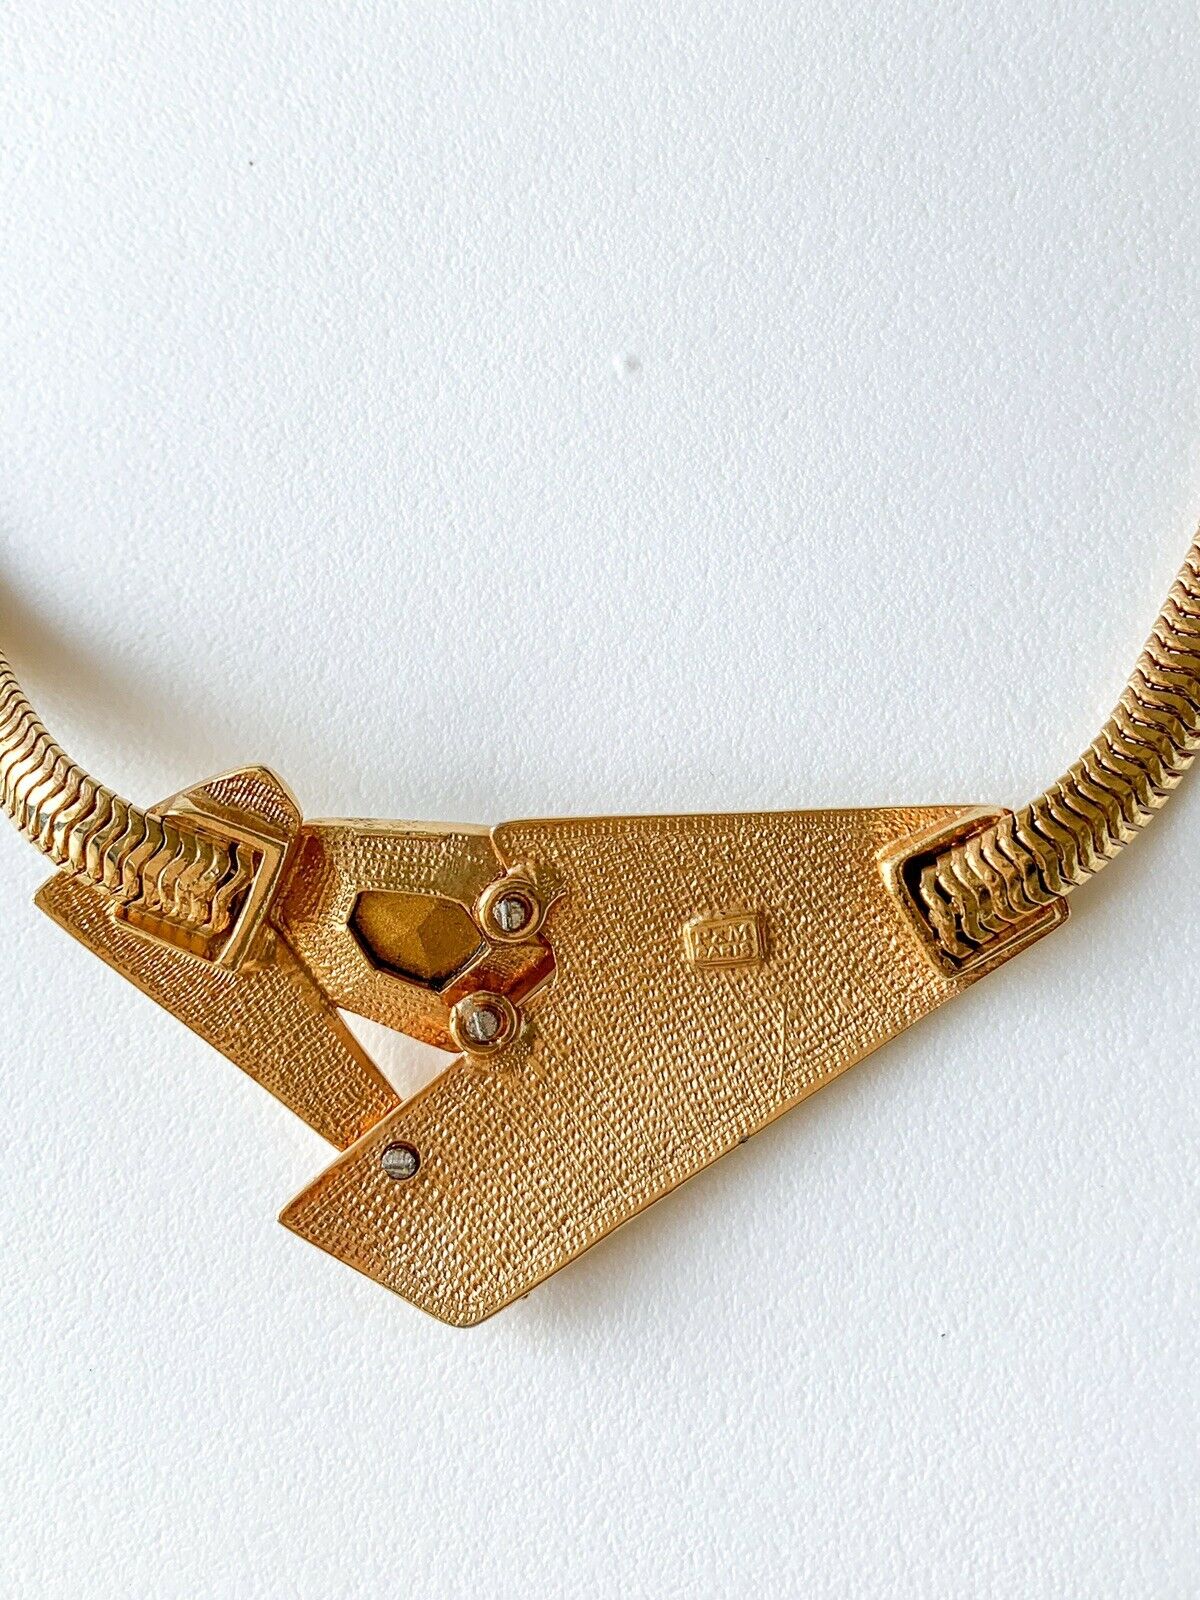 P&M Paris Massive Rhinestones Gold Tone Choker Necklace Vintage